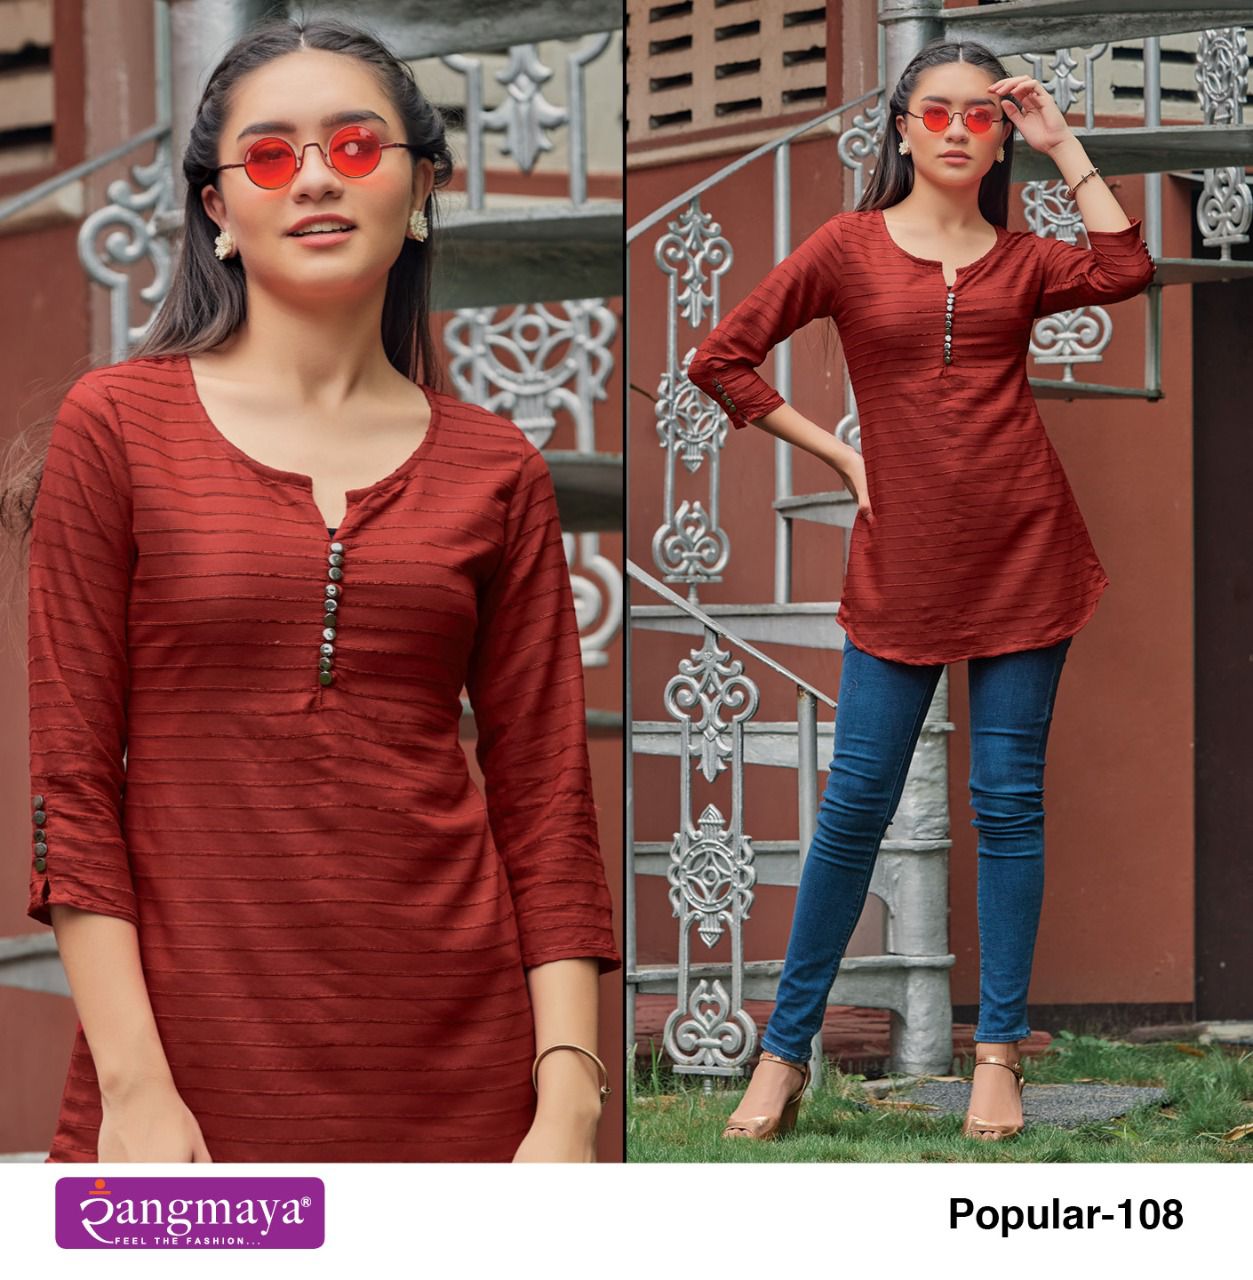 Rangmaya Fashion Popular 1008